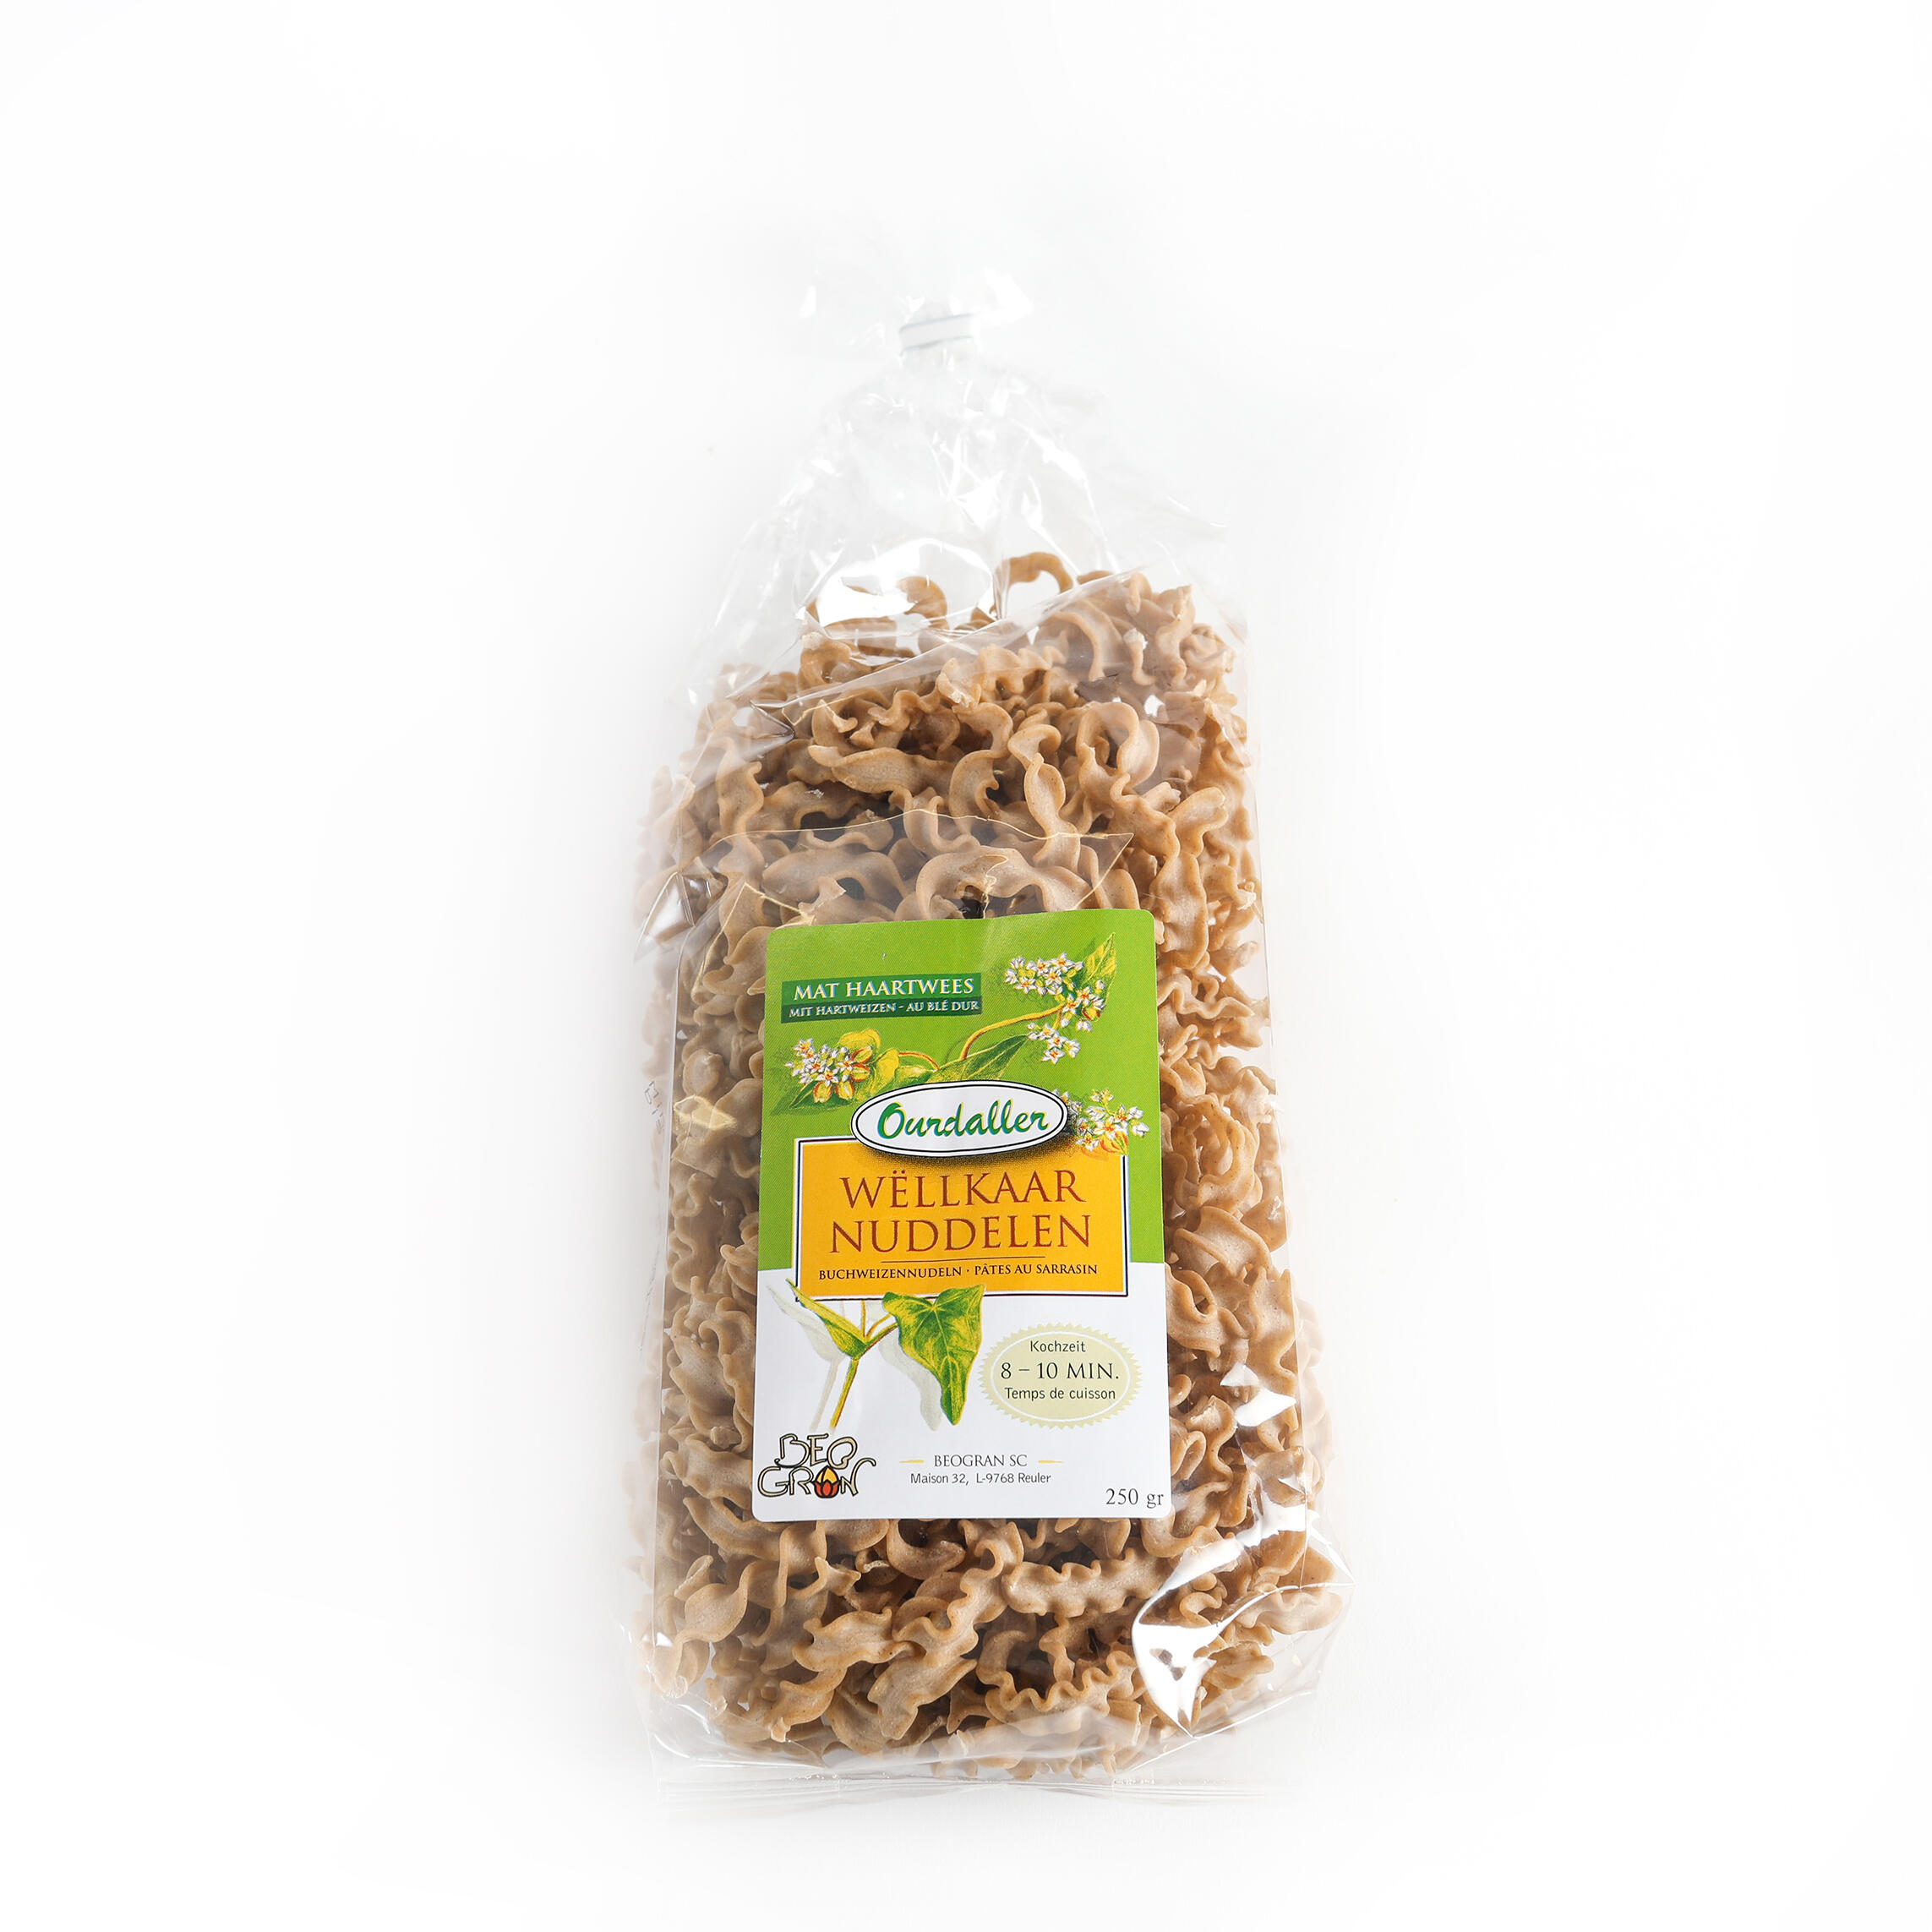 Buckwheat noodles "WELLBAND" with durum wheat semolina